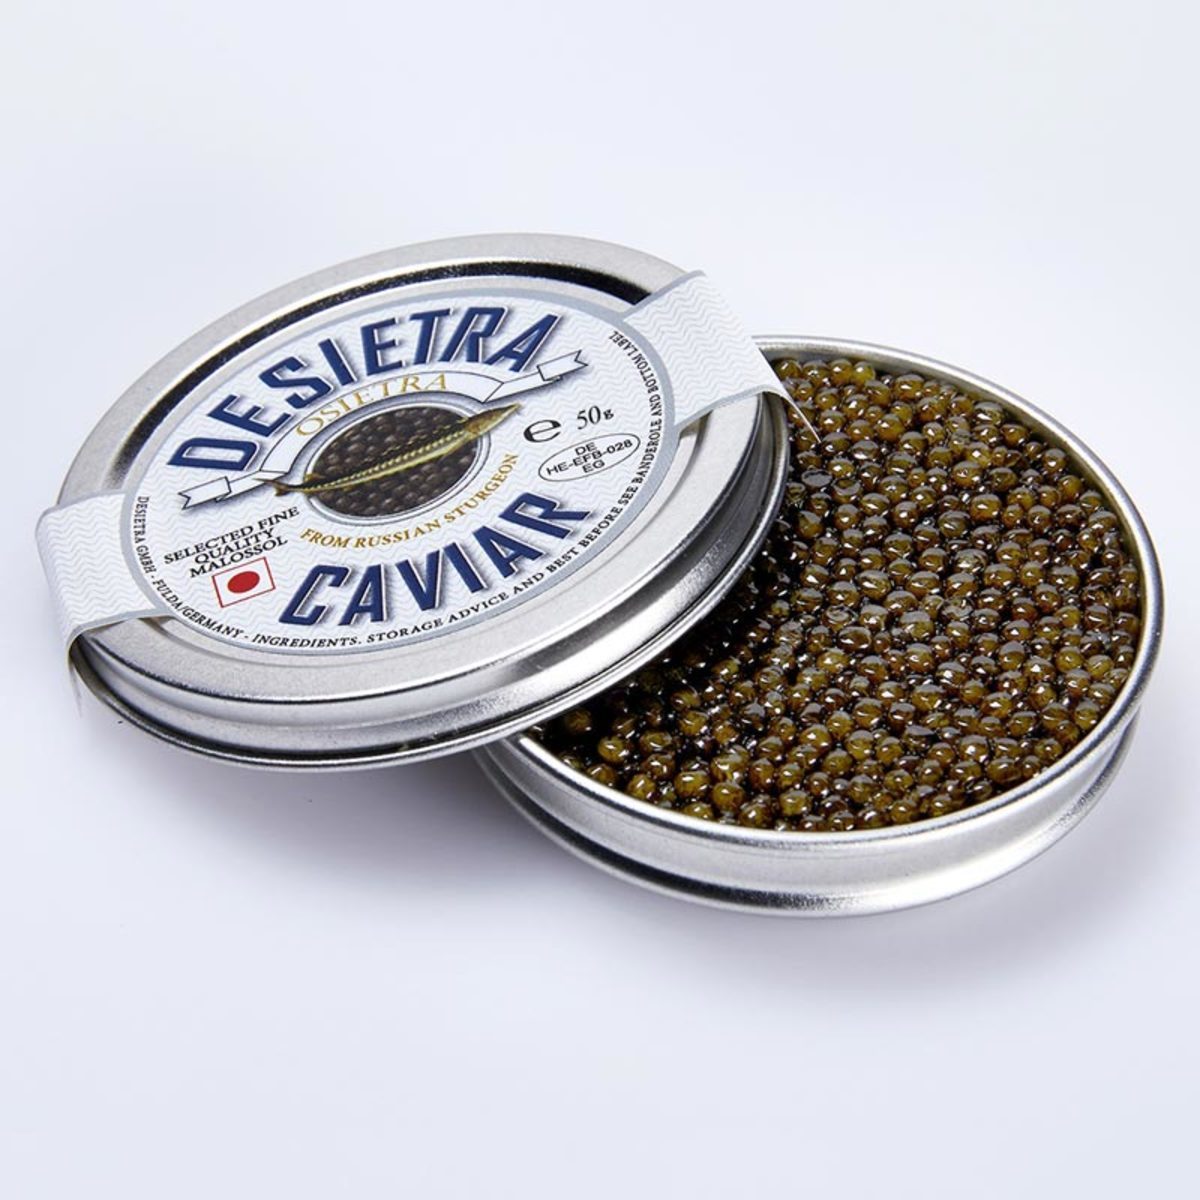 Desietra Osietra Caviar, 6 x 30g